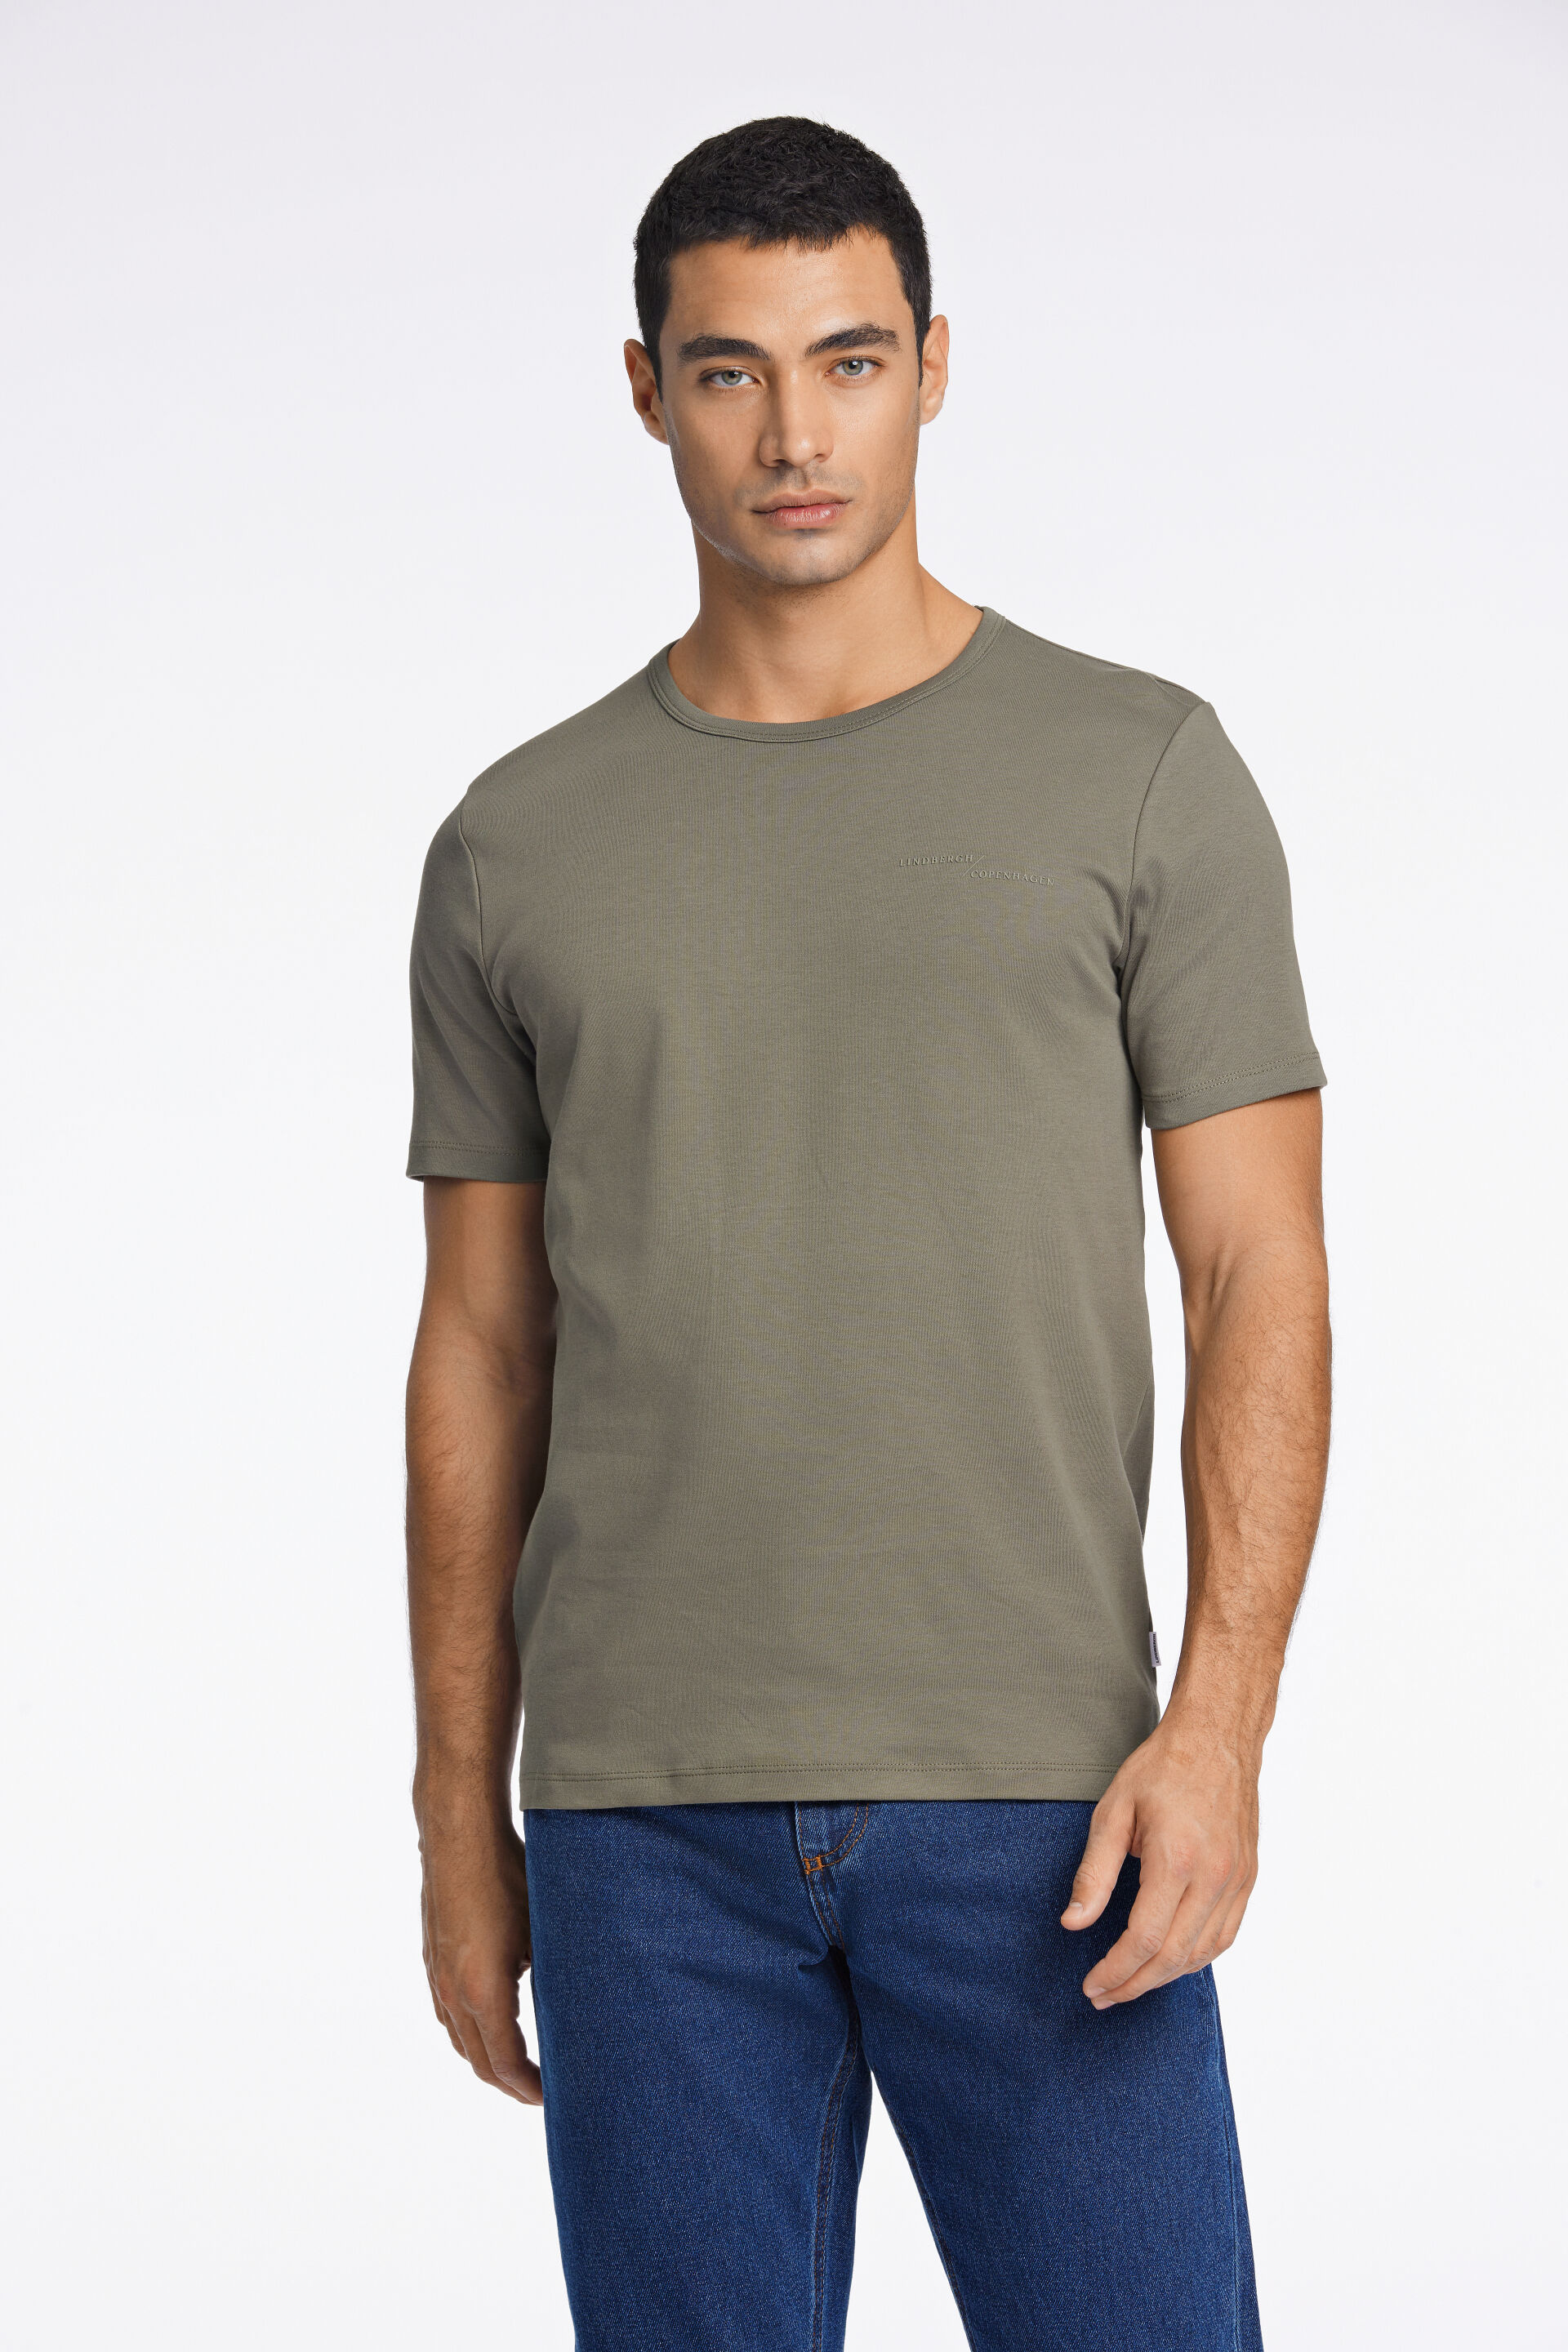 T-shirt T-shirt Grün 30-400238